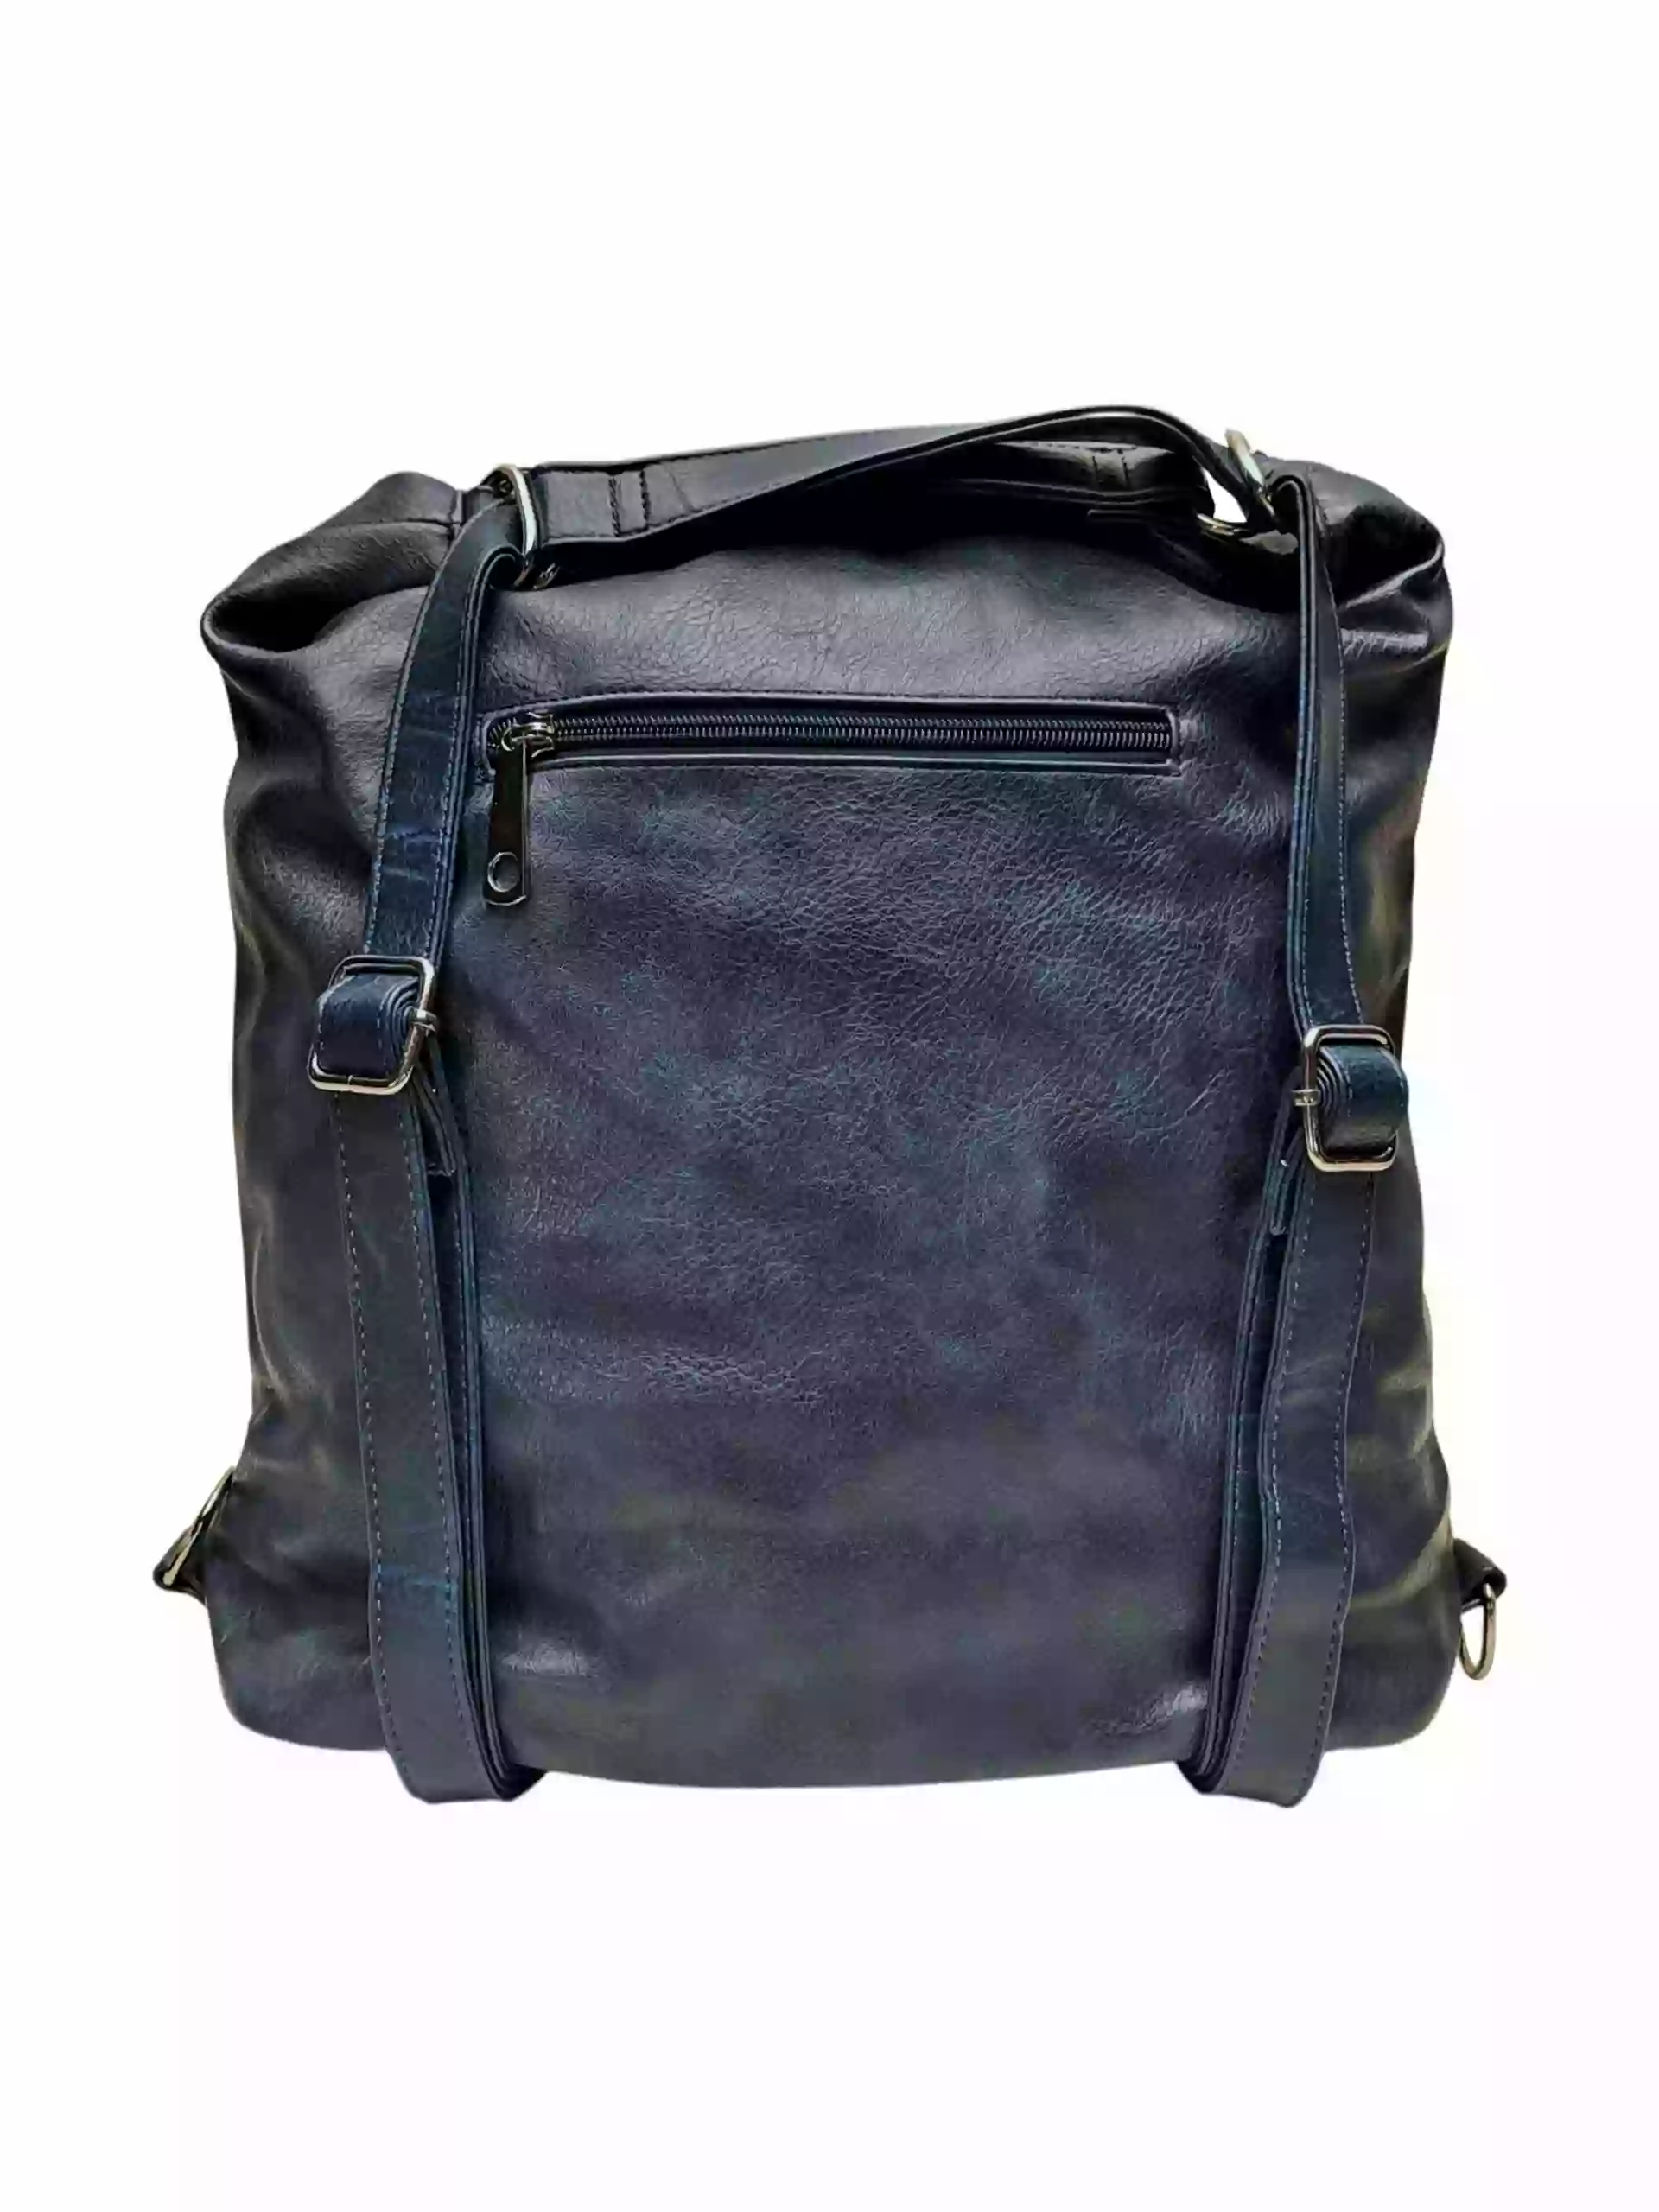 Velký tmavě modrý kabelko-batoh s kapsou, Tapple, H23904, zadní strana kabelko-batohu s popruhy